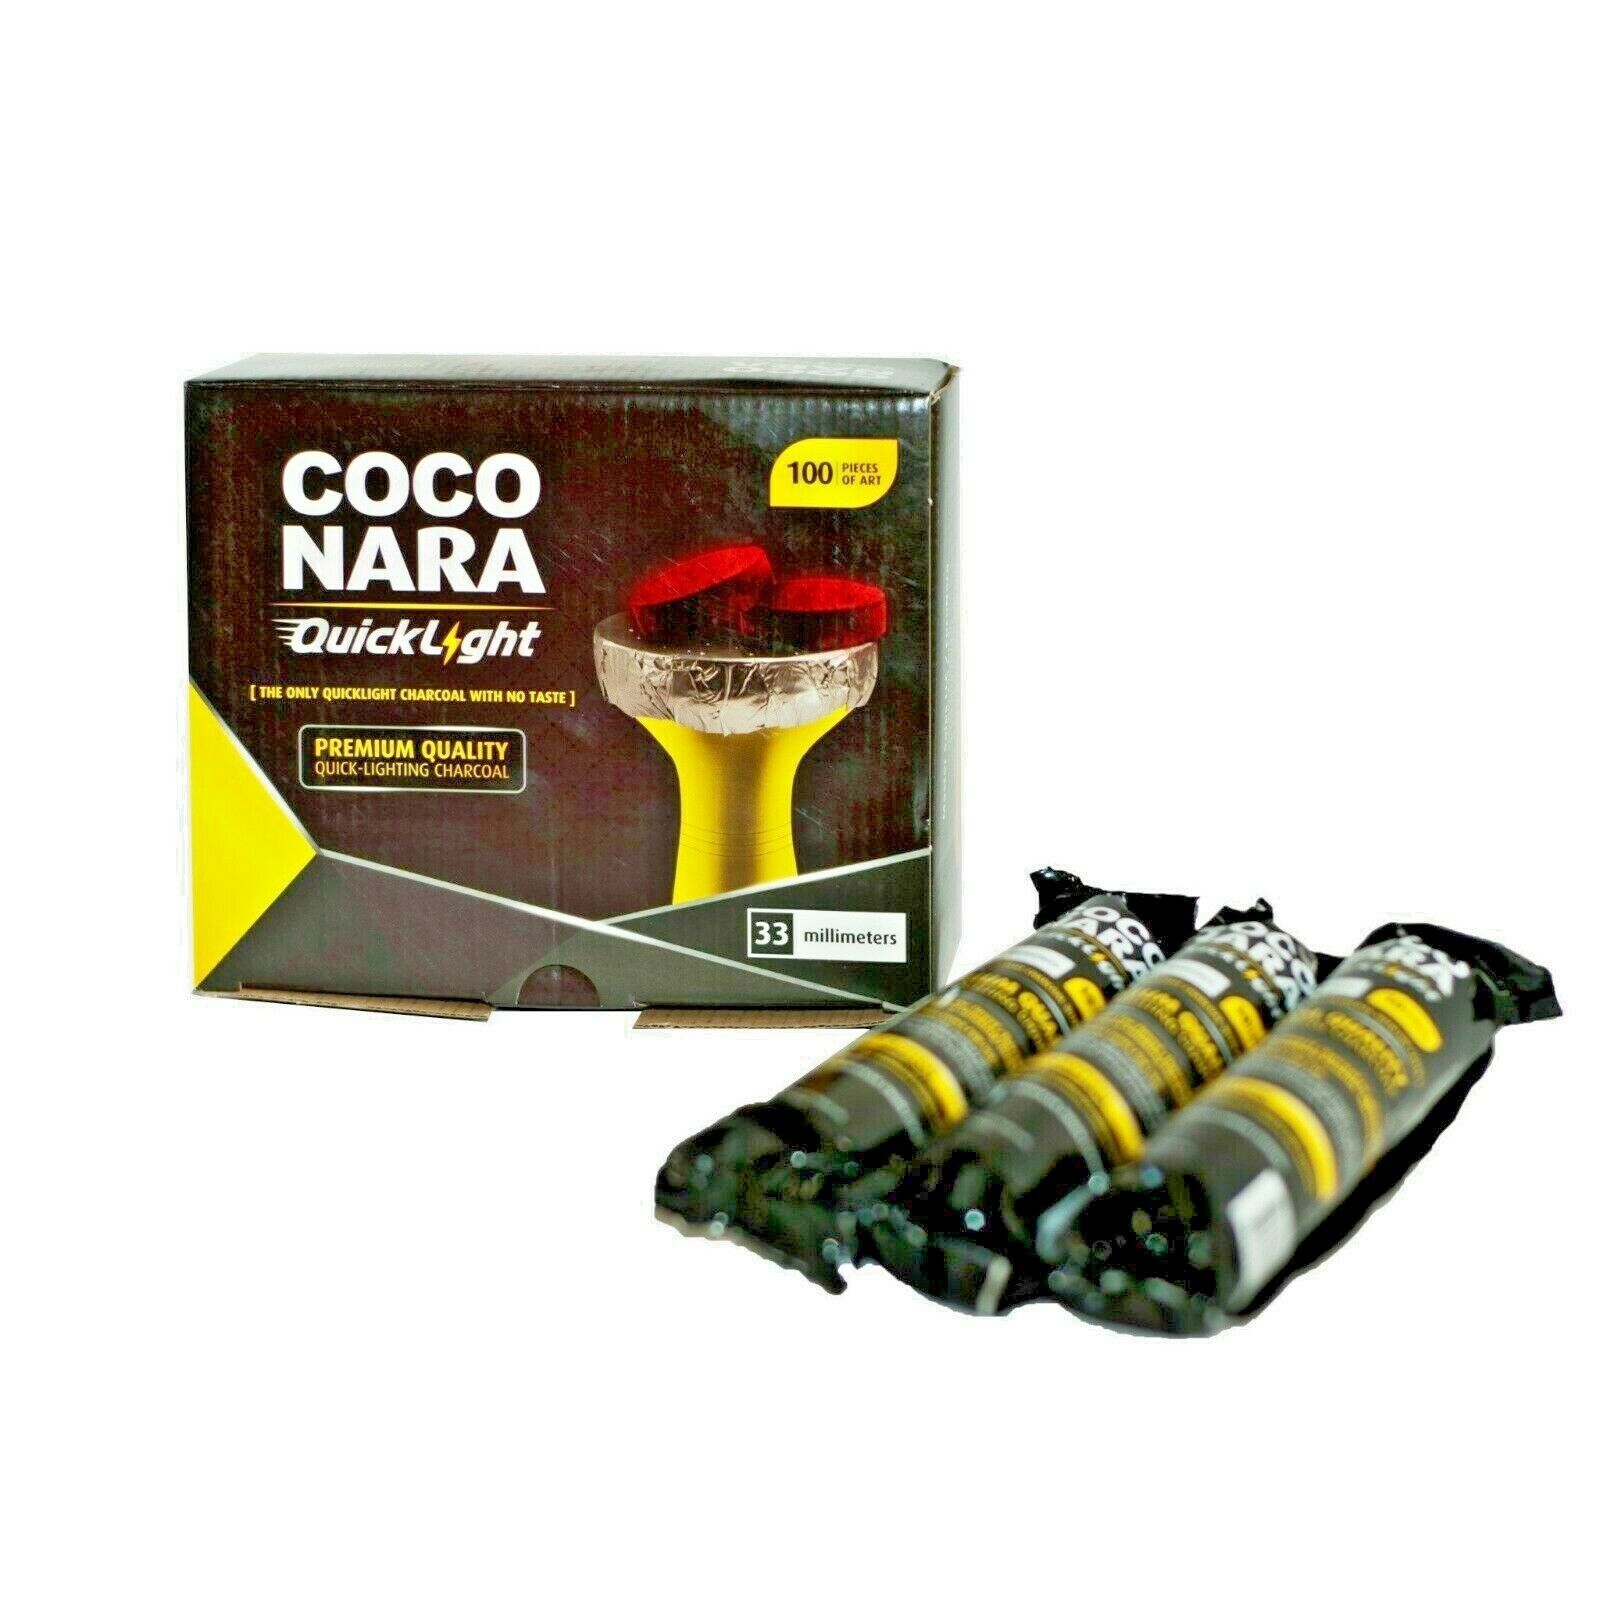 Quick Light Hookah Charcoals COCO NARA 100pcs Box 33mm